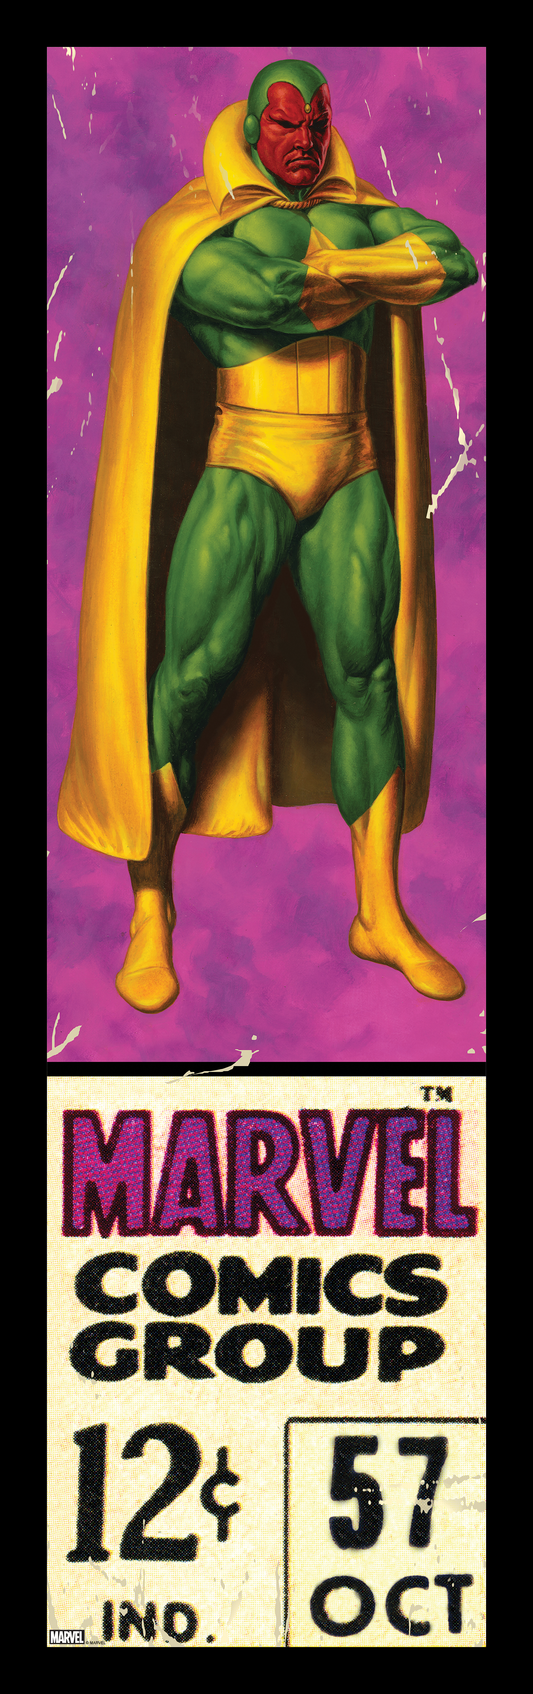 Joe Jusko "Avengers #4"